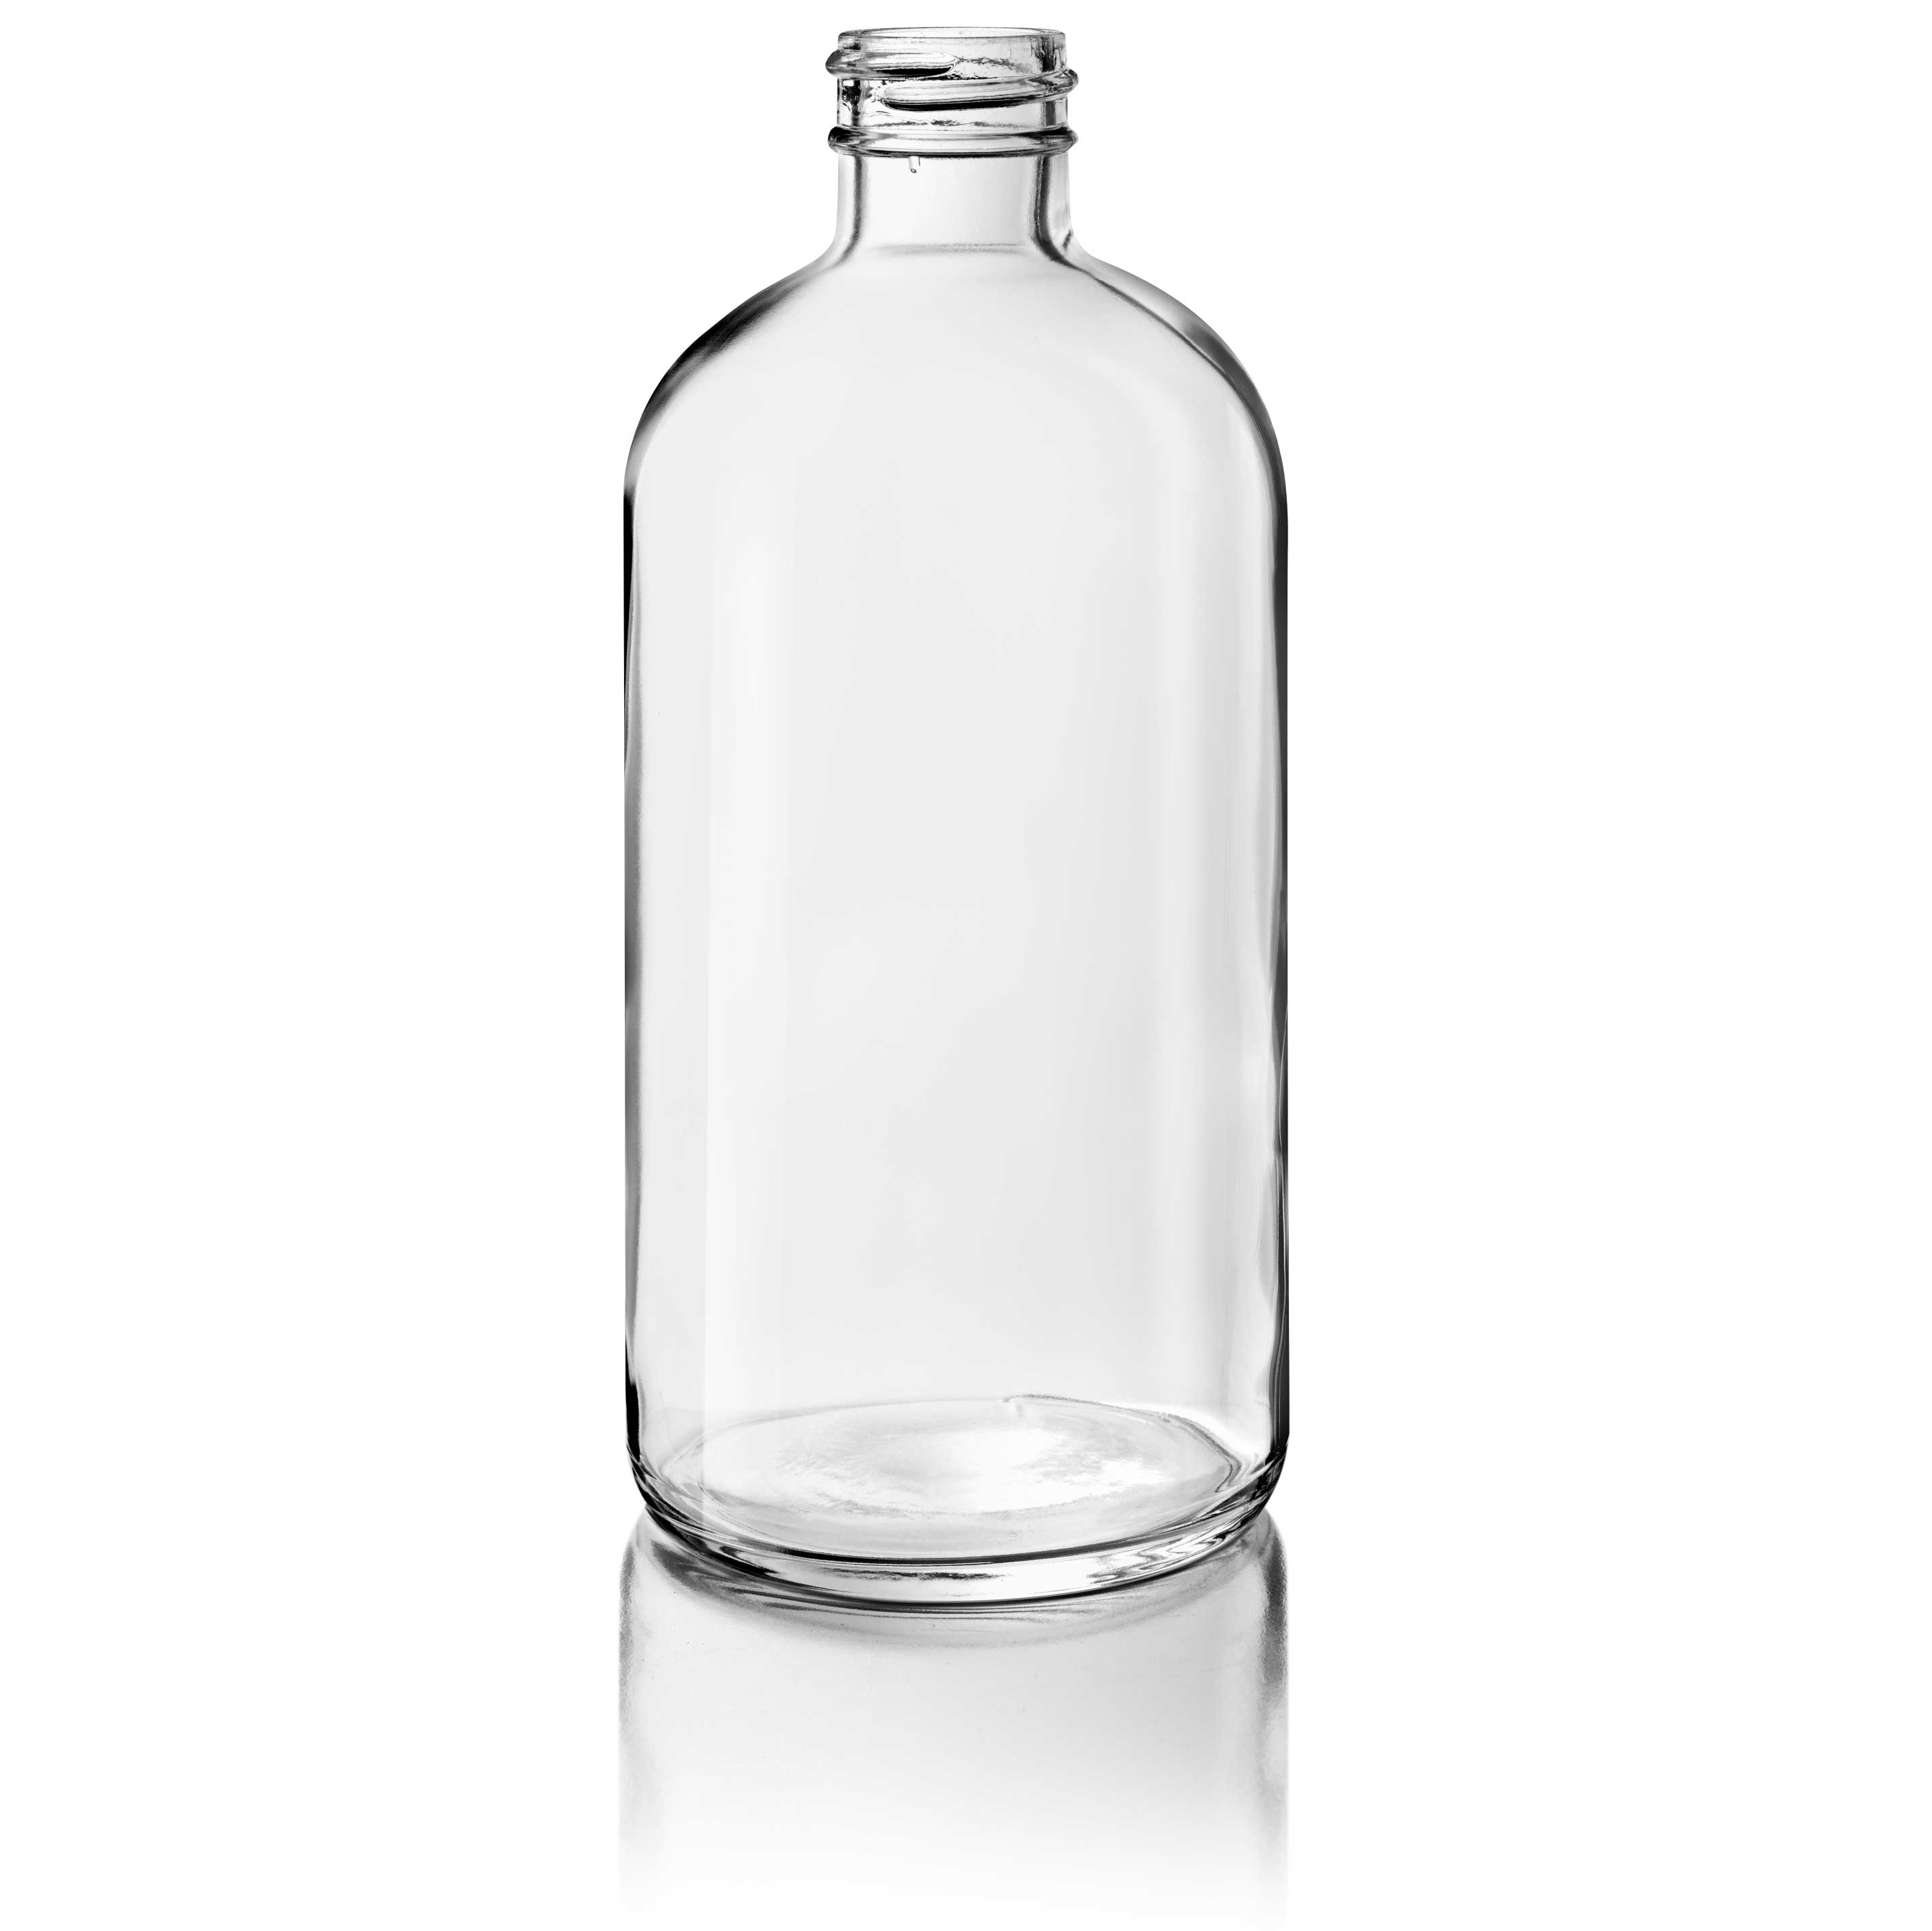 Cosmetic bottle Linden Light Weight 250 ml, 24/410, Flint